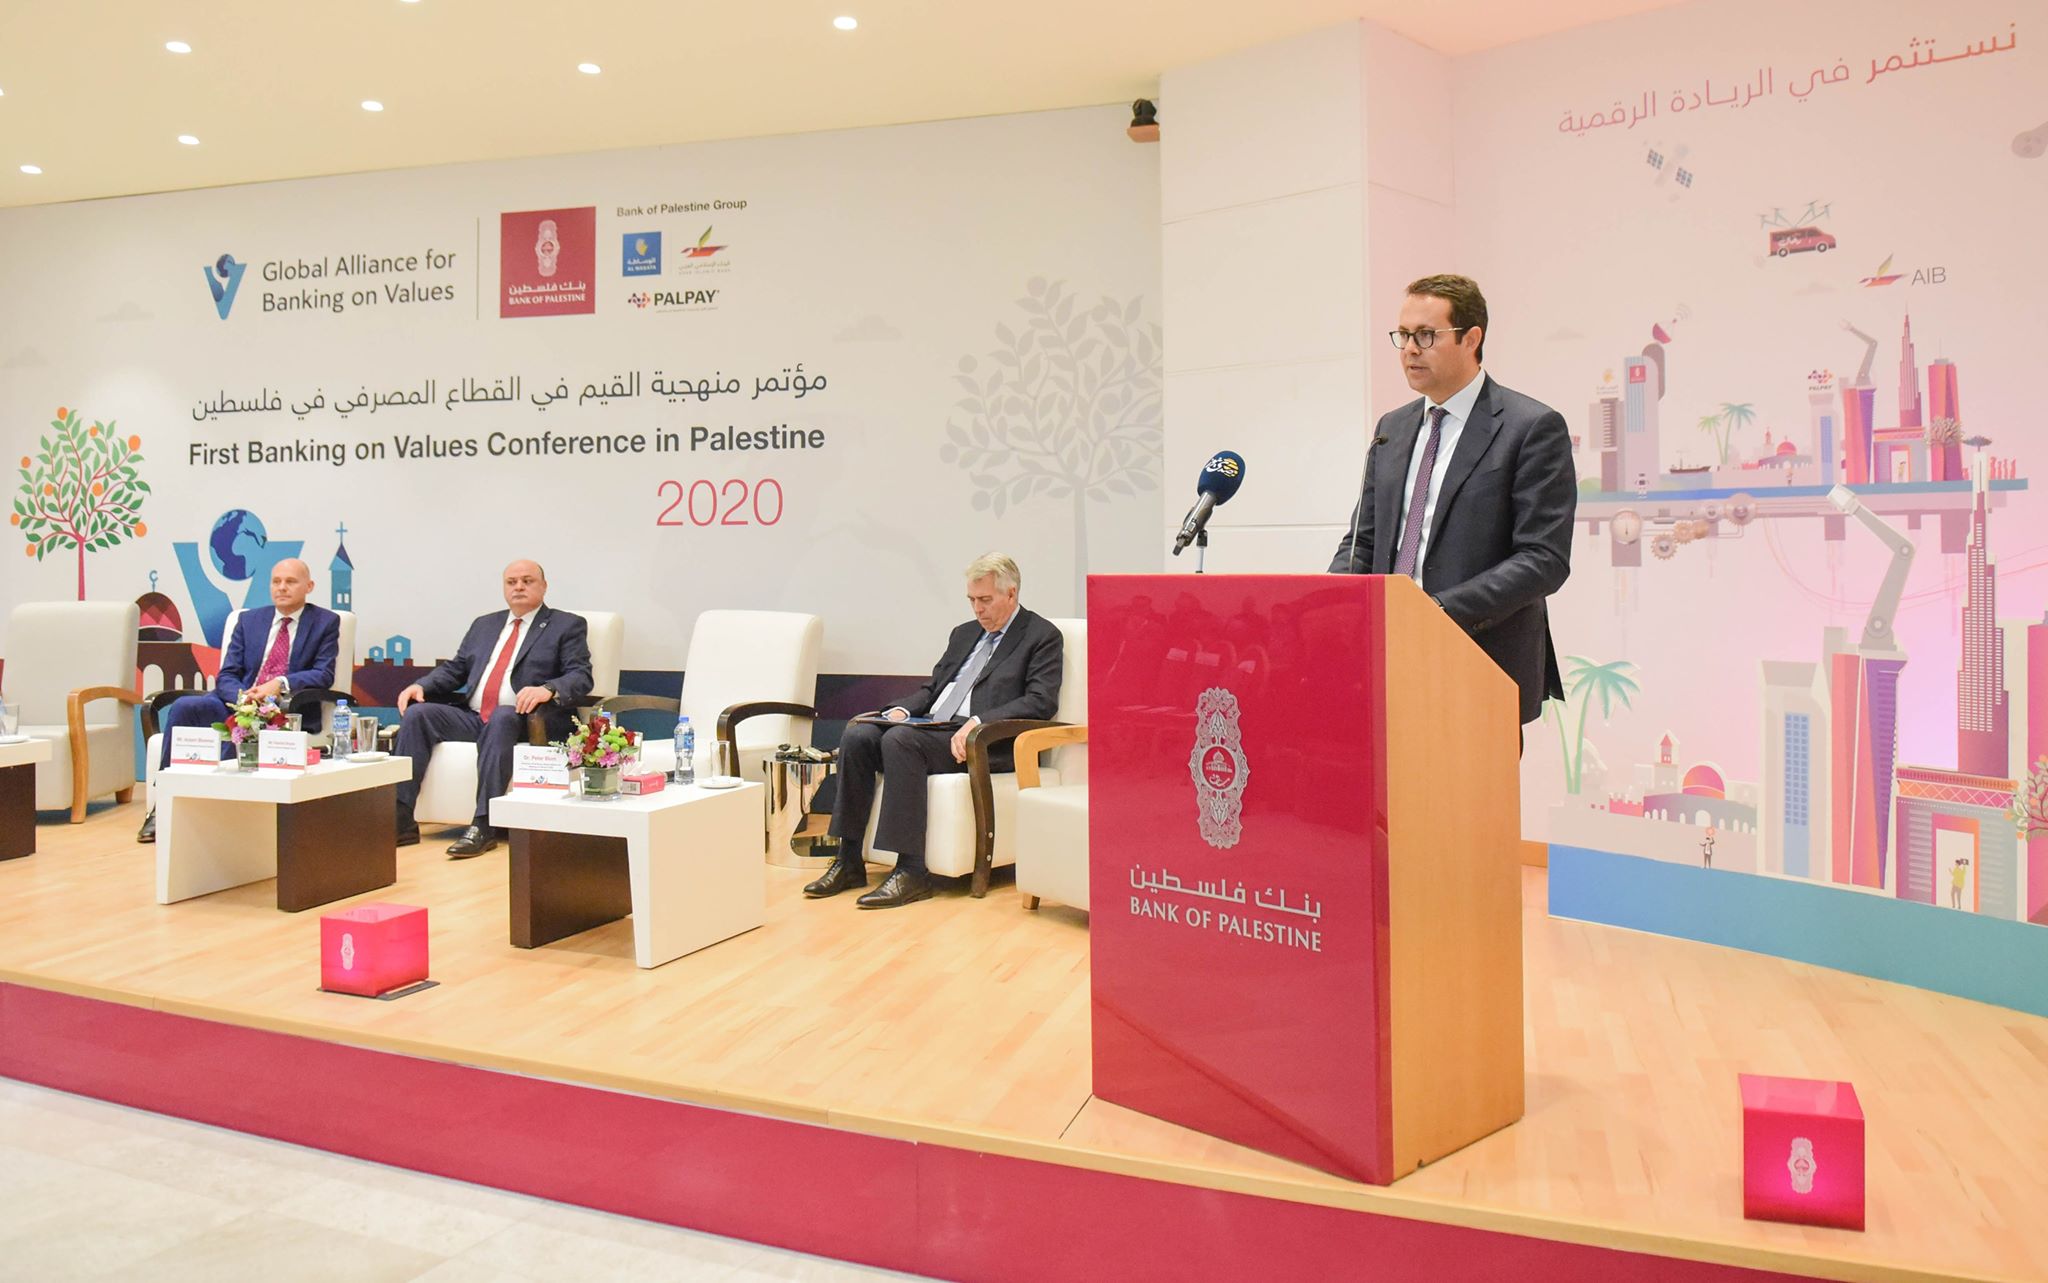 بنك فلسطين ينظم مؤتمراً حول منهجية القيم في العمل المصرفي بالشراكة مع التحالف العالمي للبنوك الملتزمة بالقيم